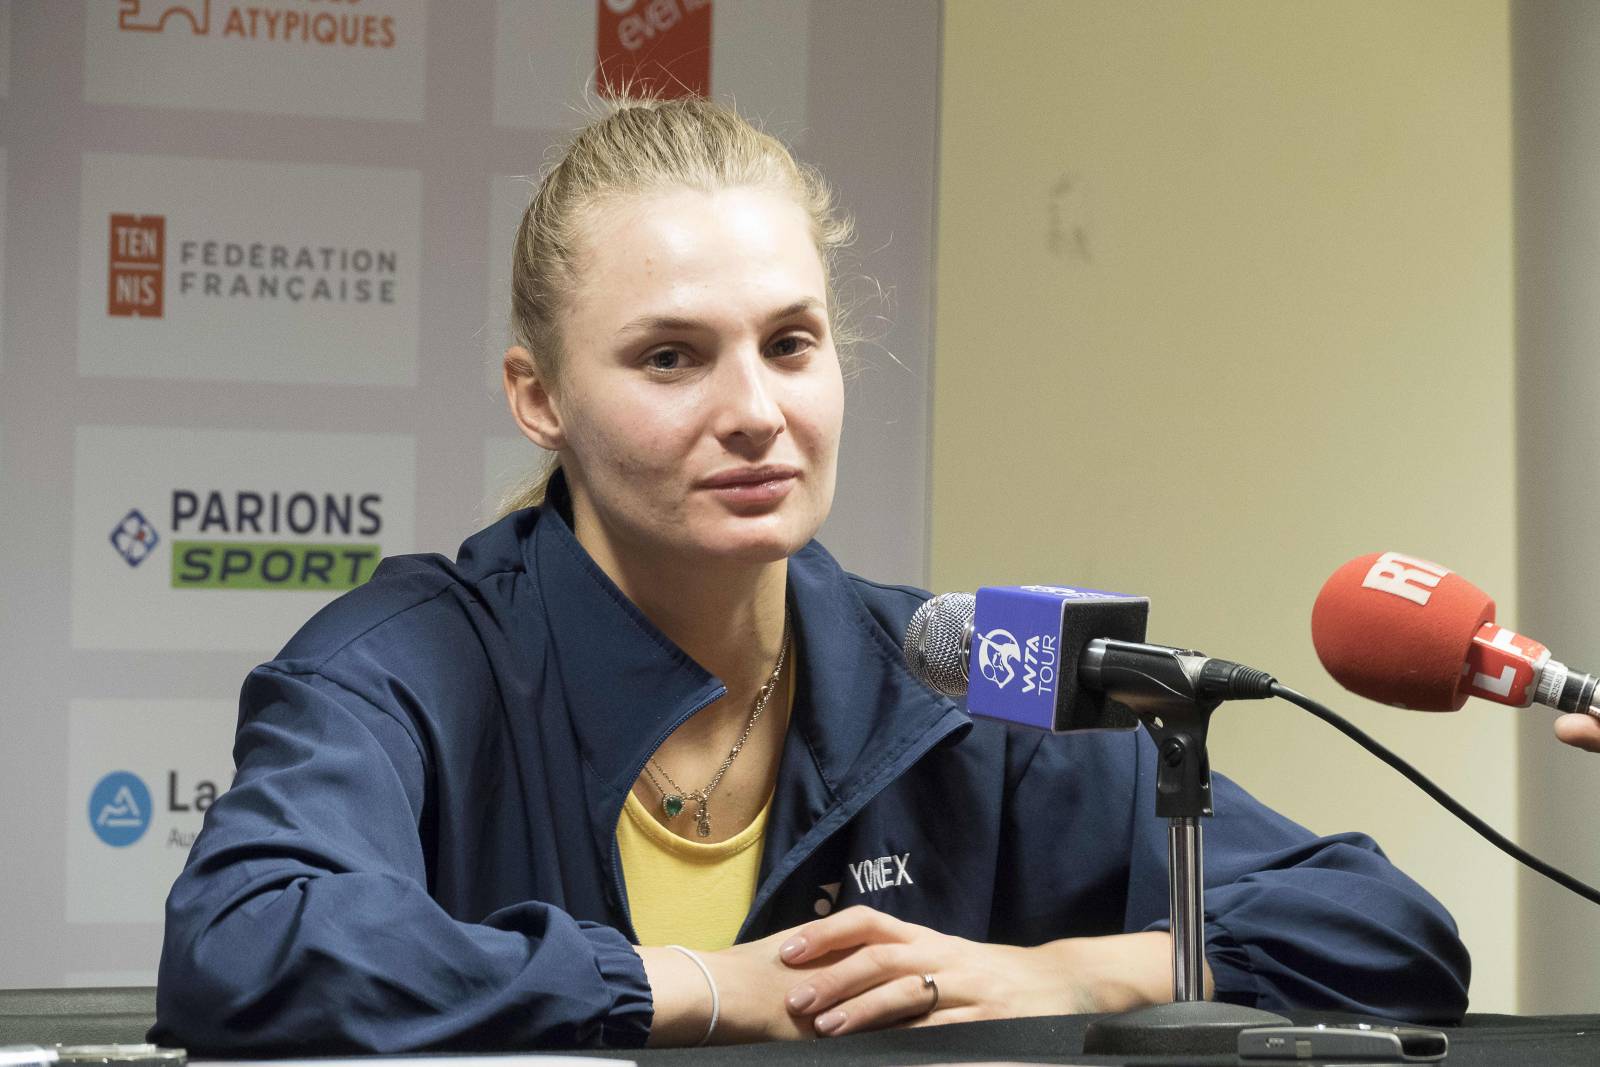 Украинская теннисистка Ястремская, которая выступала за отстранение россиян, выбыла в первом круге Уимблдона